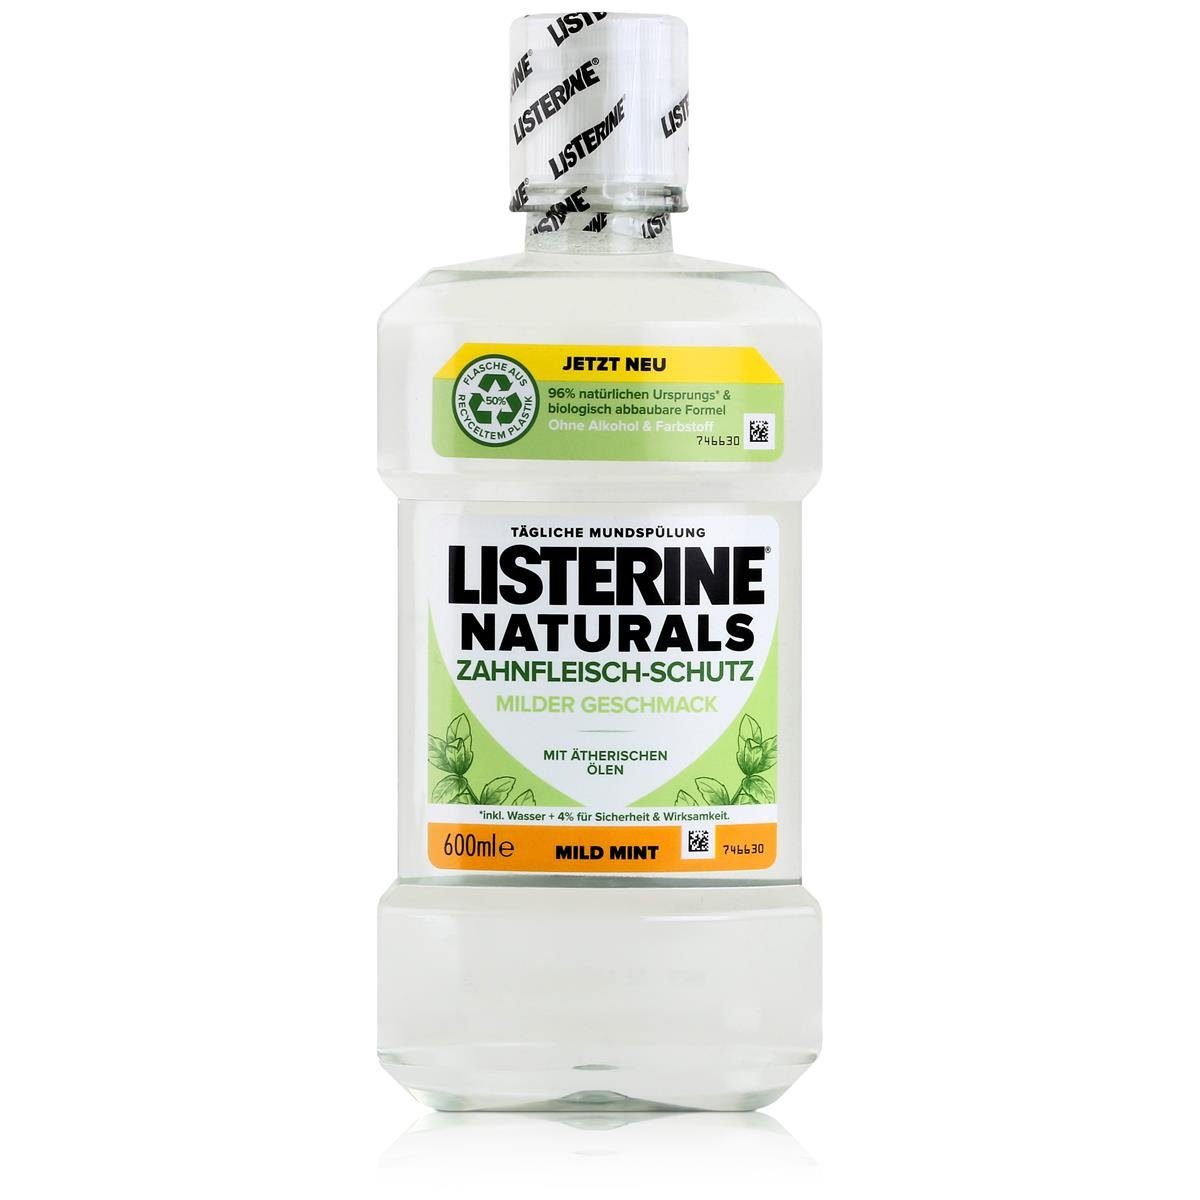 Listerine Mundspülung, Listerine Munspülung Naturals Zahnfleisch-Schutz 600ml - Mild Mint (1e